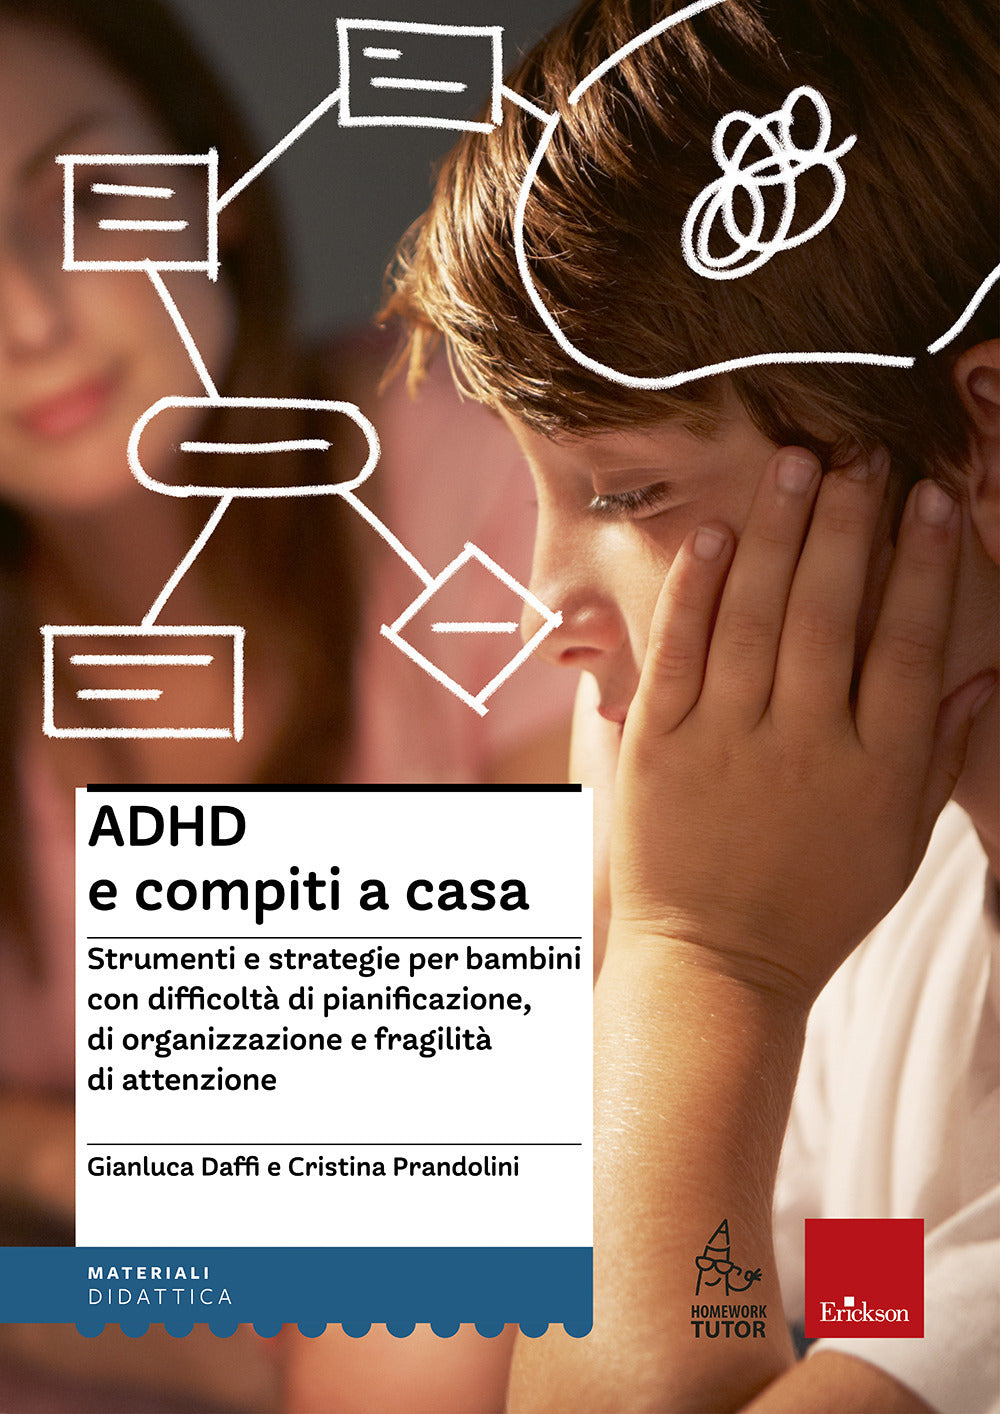 ADHD e compiti a casa. Strumenti e strategie per bambini con difficoltà di pianificazione, di organizzazione e fragilità di attenzione.